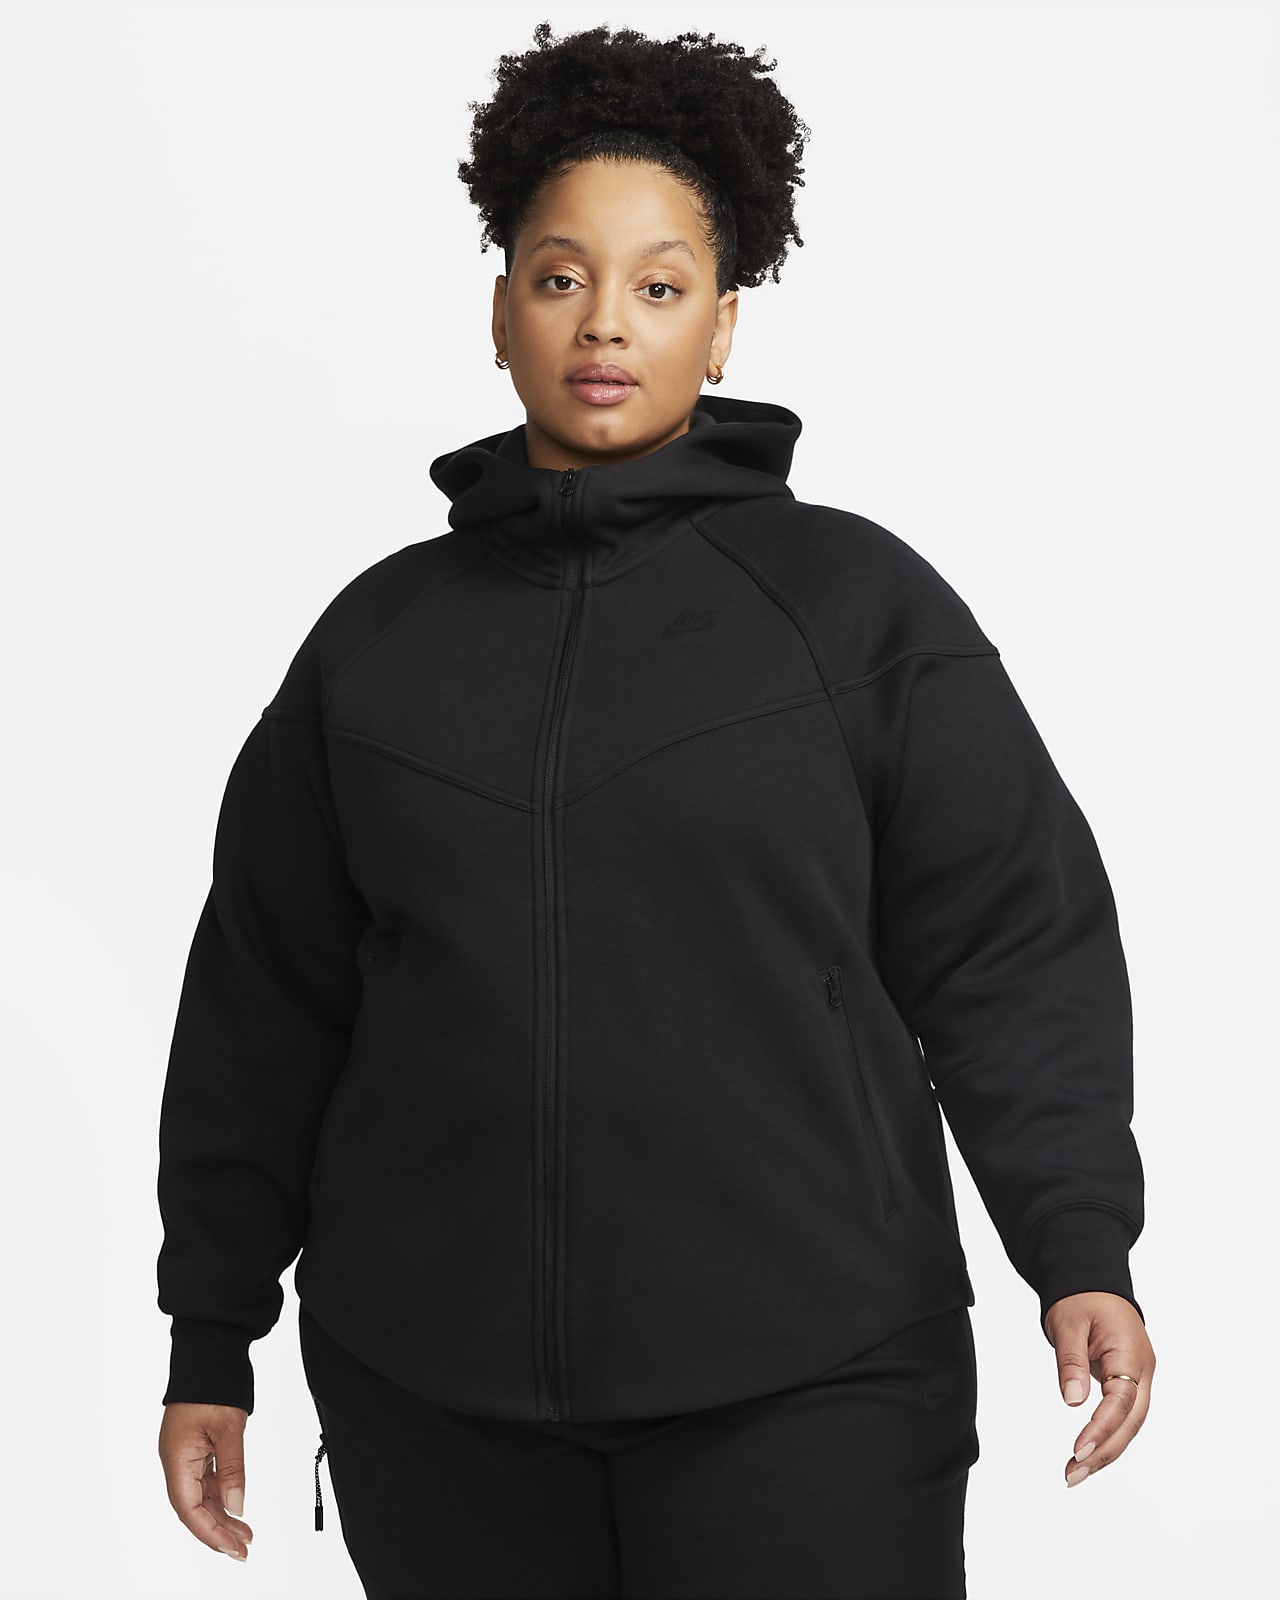 Dámská mikina s kapucí a zipem po celé délce Nike Sportswear Tech Fleece Windrunner (větší velkost)